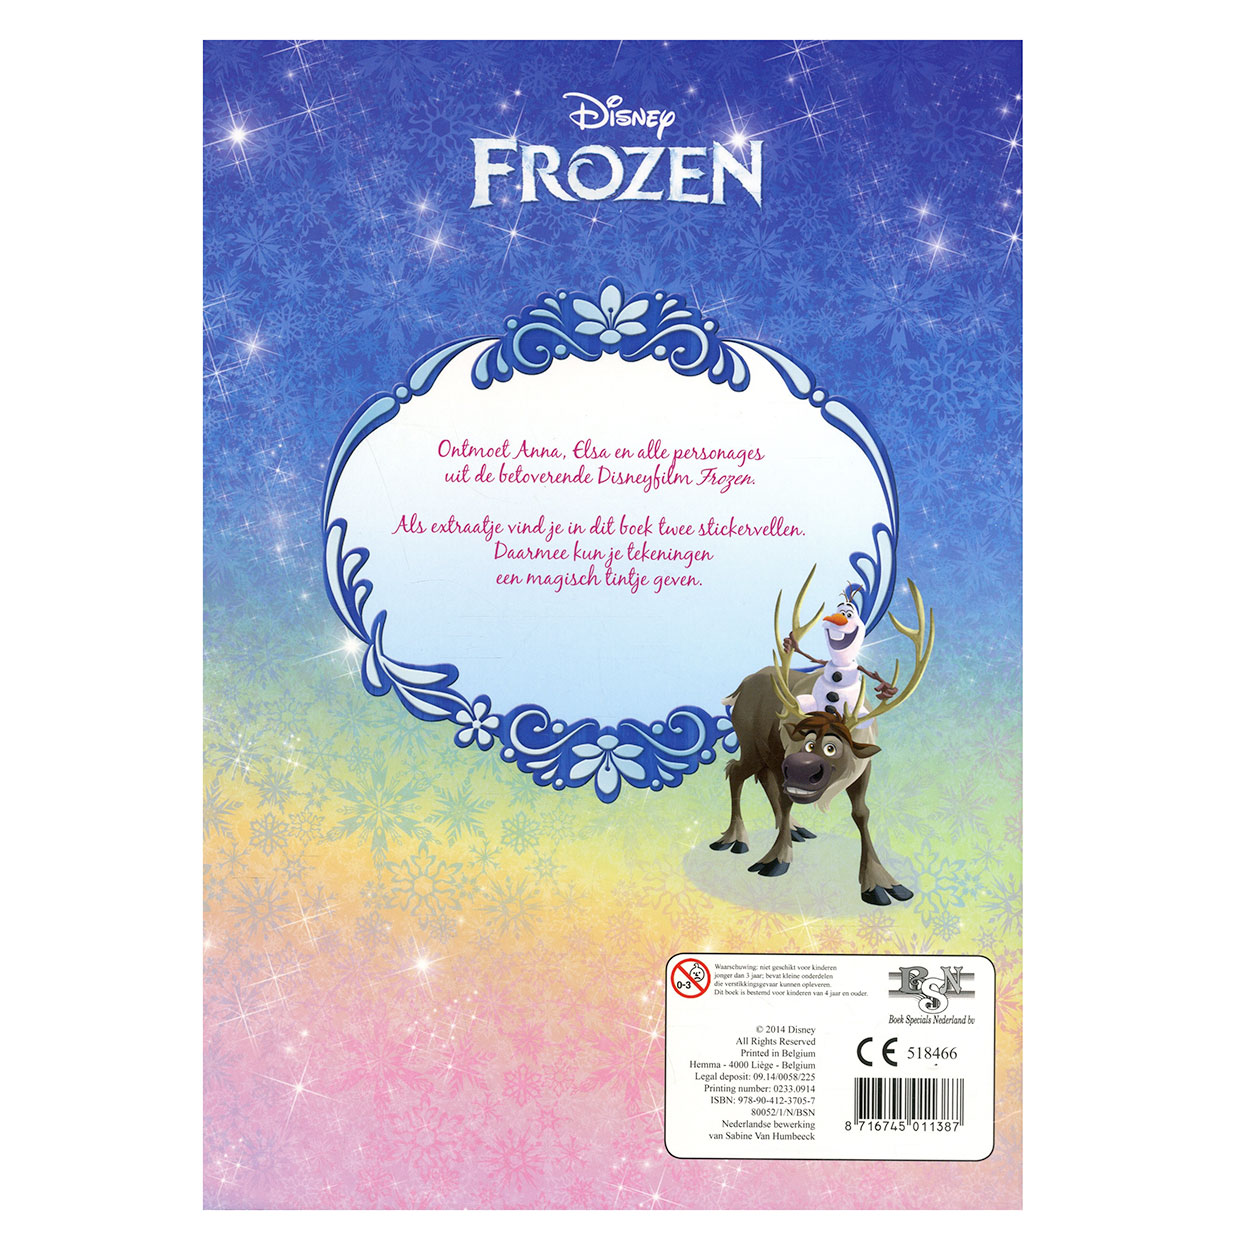 Doorbraak Krachtig Verwoesten Disney Frozen Kleurboek met Stickers online kopen? | Lobbes Speelgoed